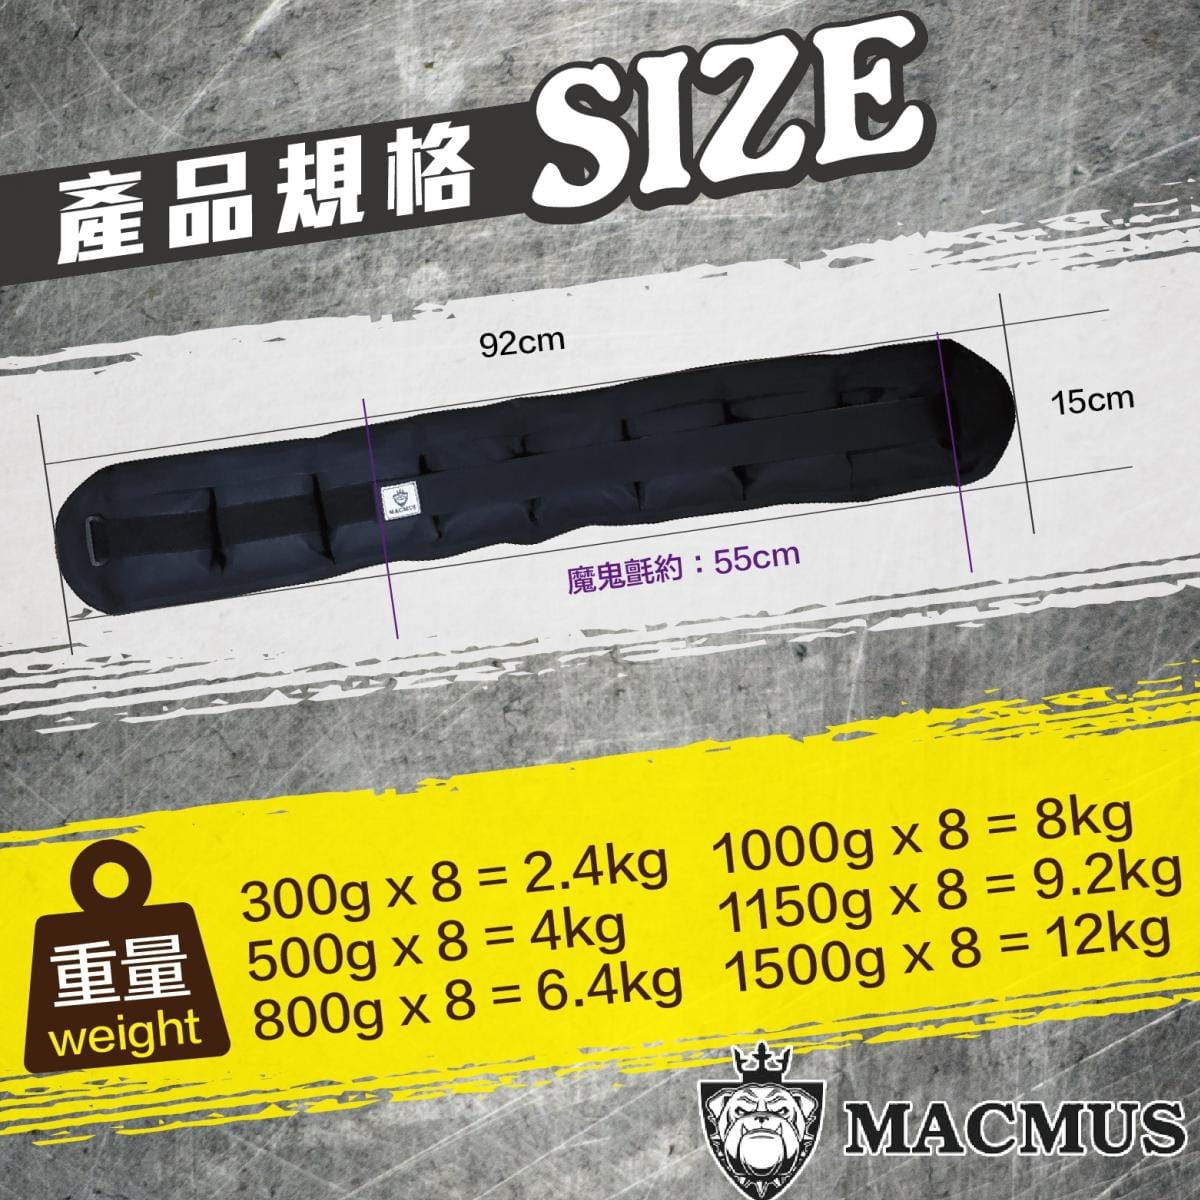 【MACMUS】8公斤負重腰帶｜8格式可調整重訓腰帶｜強化核心肌群鍛鍊腰部肌肉 1